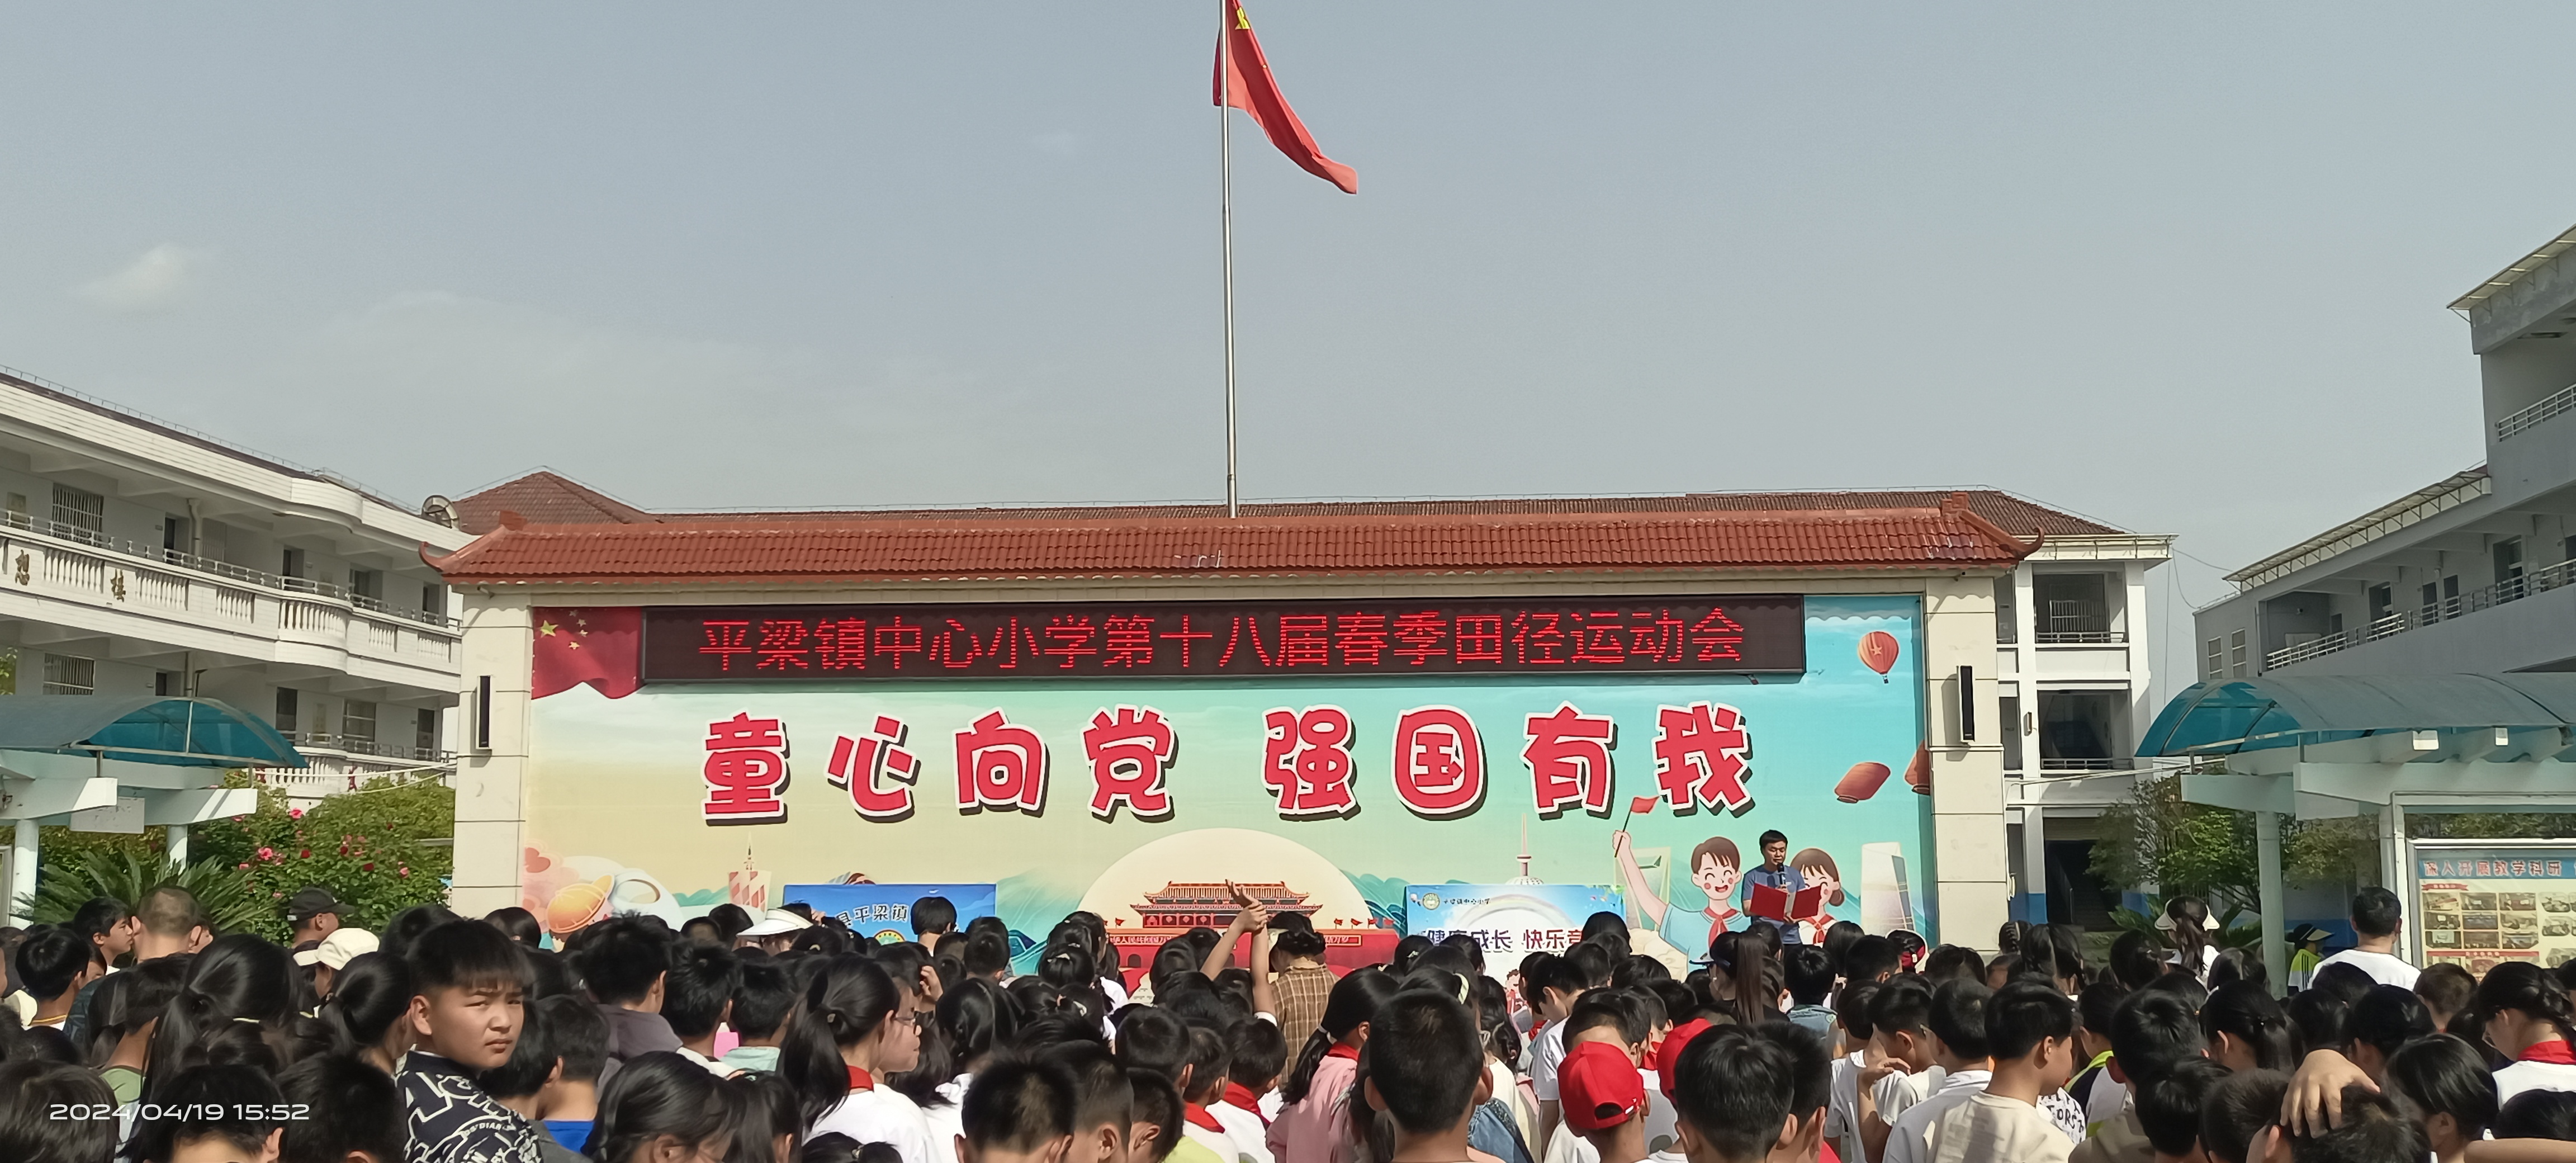 汉阴县平梁镇中心小学第十八届春季田径运动会闭幕